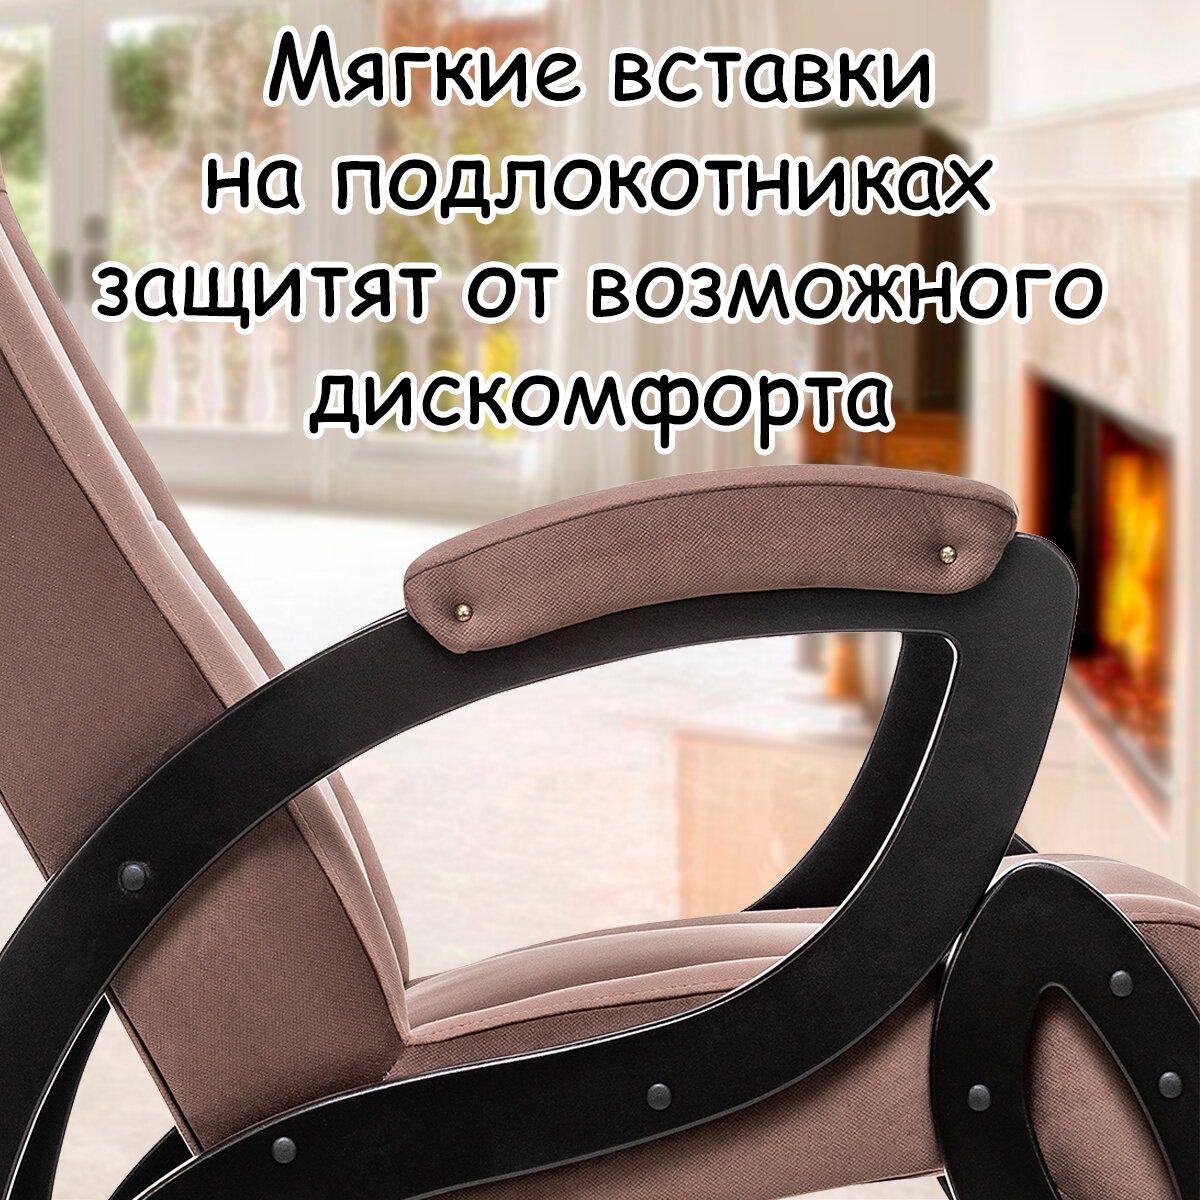 Кресло для взрослых 58.5х87х99 см, модель 51, maxx, цвет: Maxx 235 (коричневый), каркас: Venge (черный) - фотография № 5